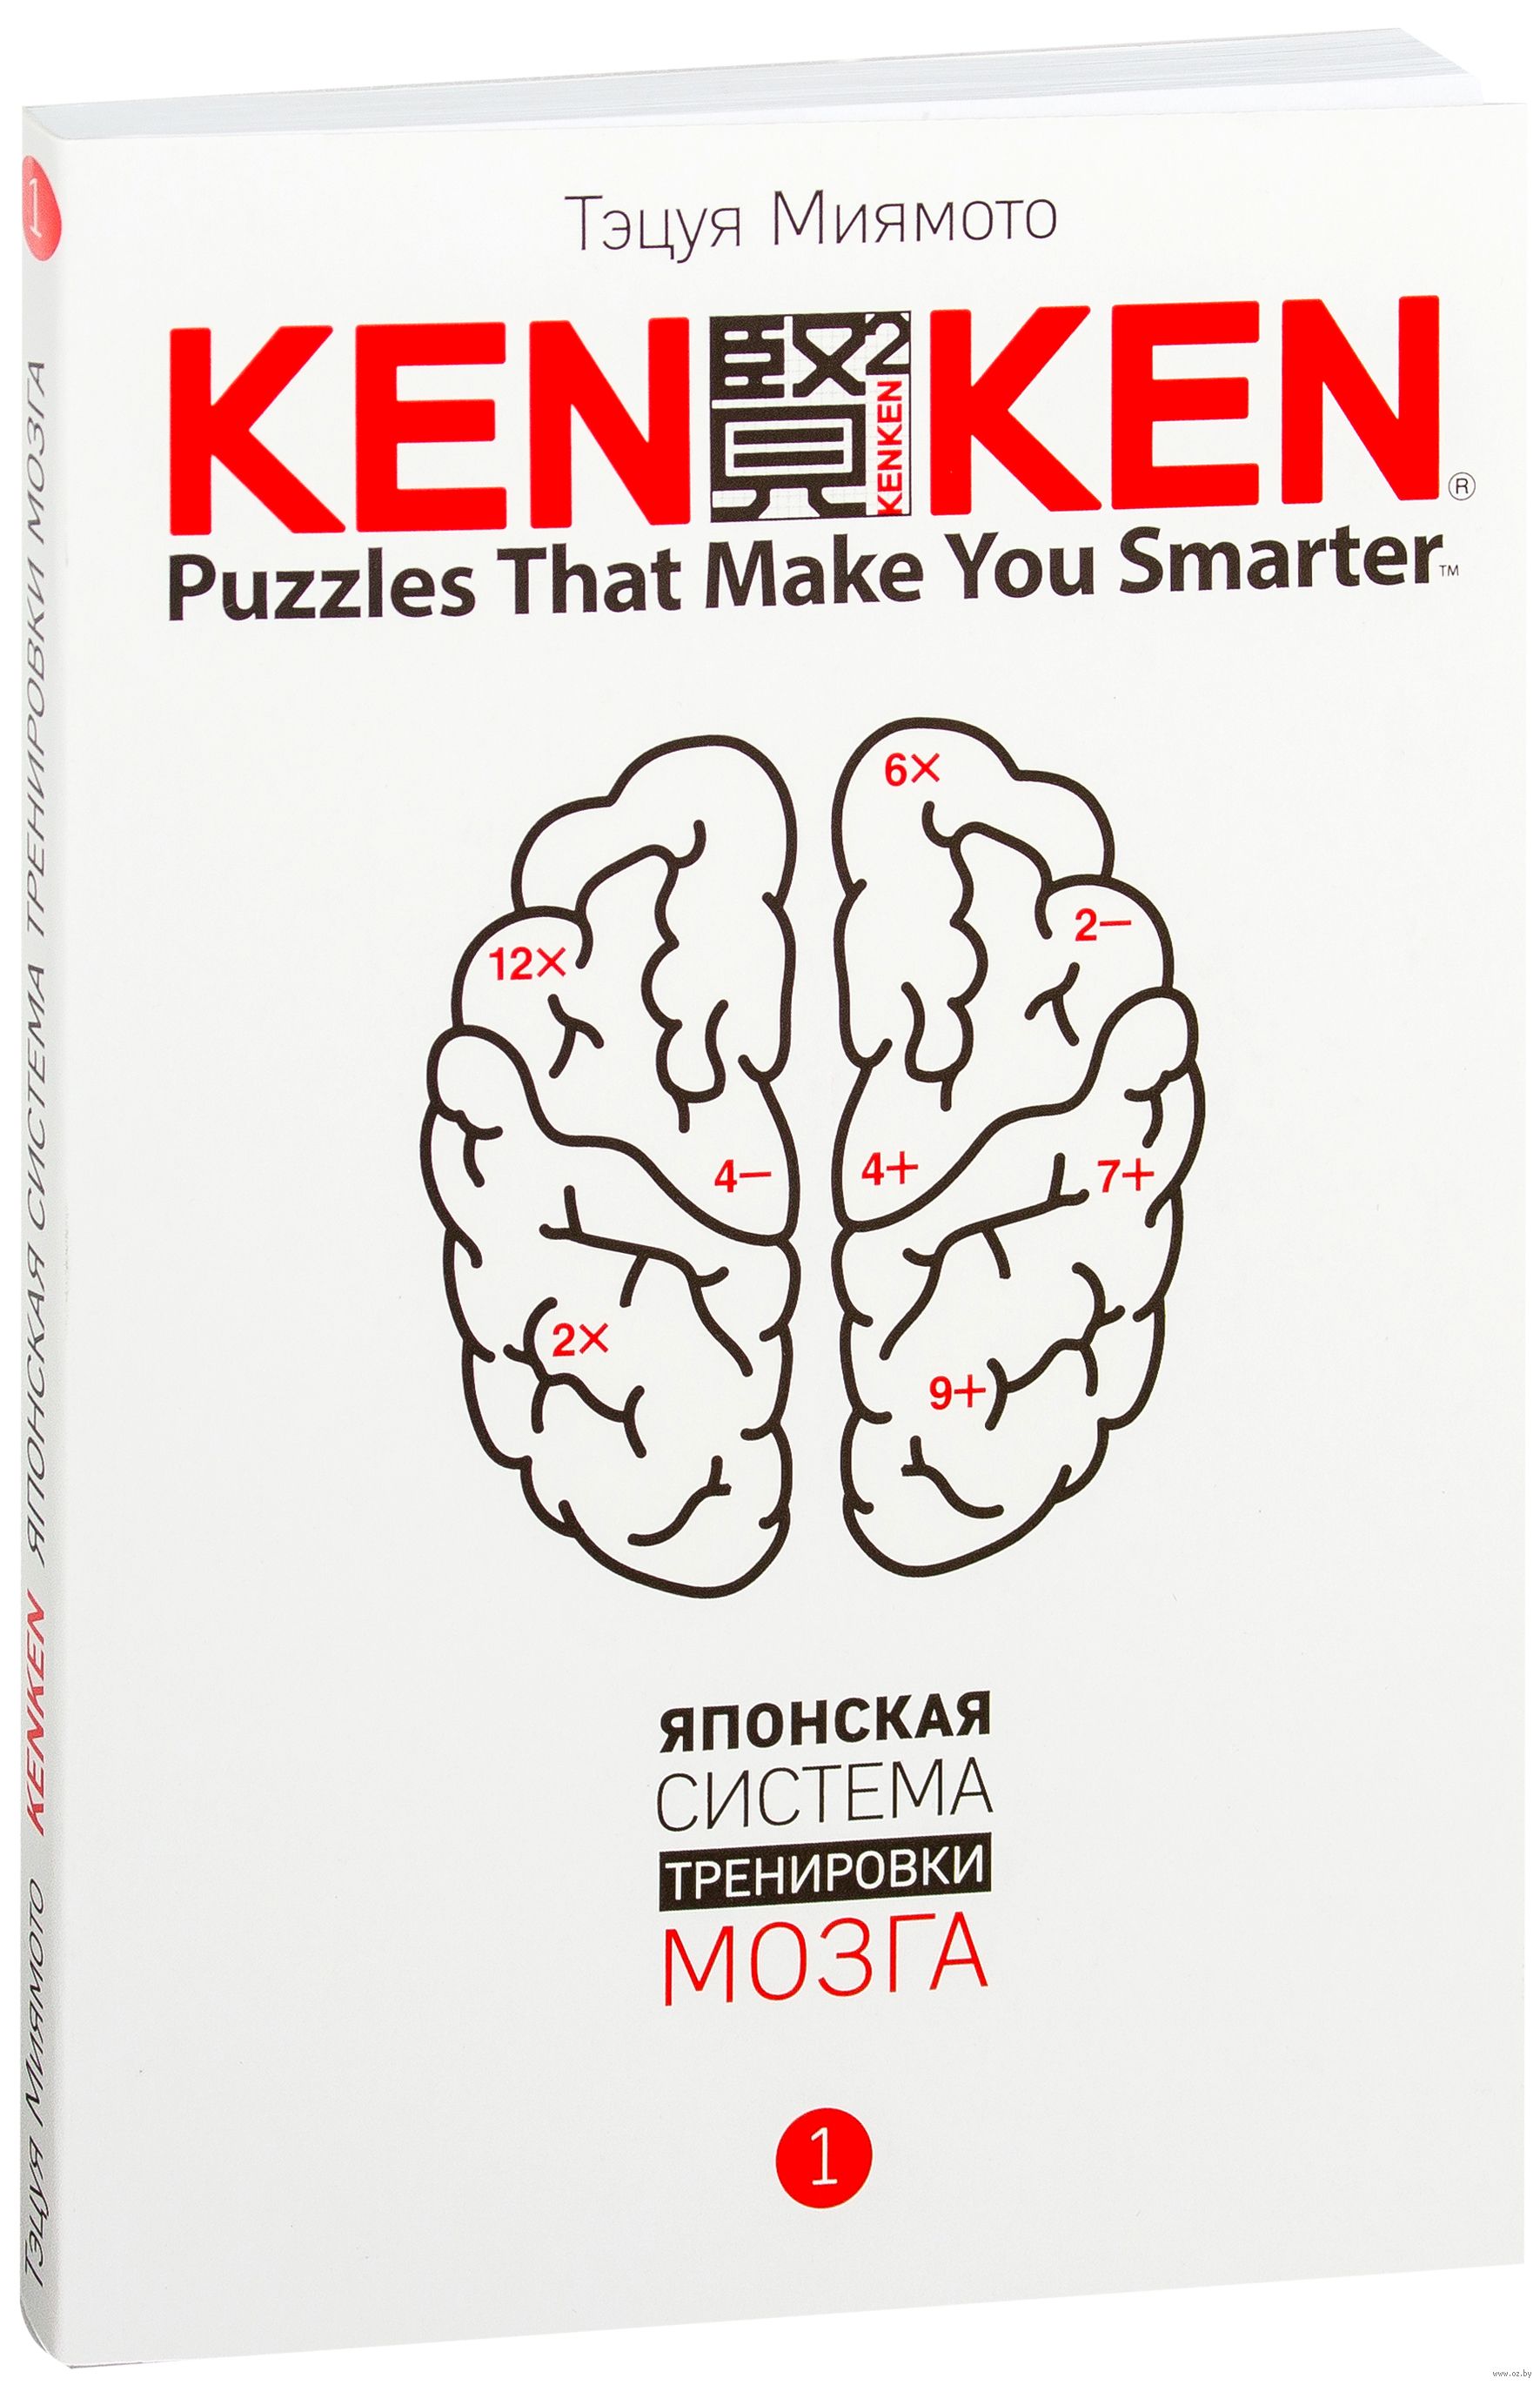 Тренируй свой мозг японская. Кен Кен японская система тренировки мозга. Тэцуя Миямото, японская система тренировки мозга том 1 - 2017. Тэцуя Миямото, японская система тренировки мозга том 2 - 2017. KENKEN. Японская система тренировки мозга книга.